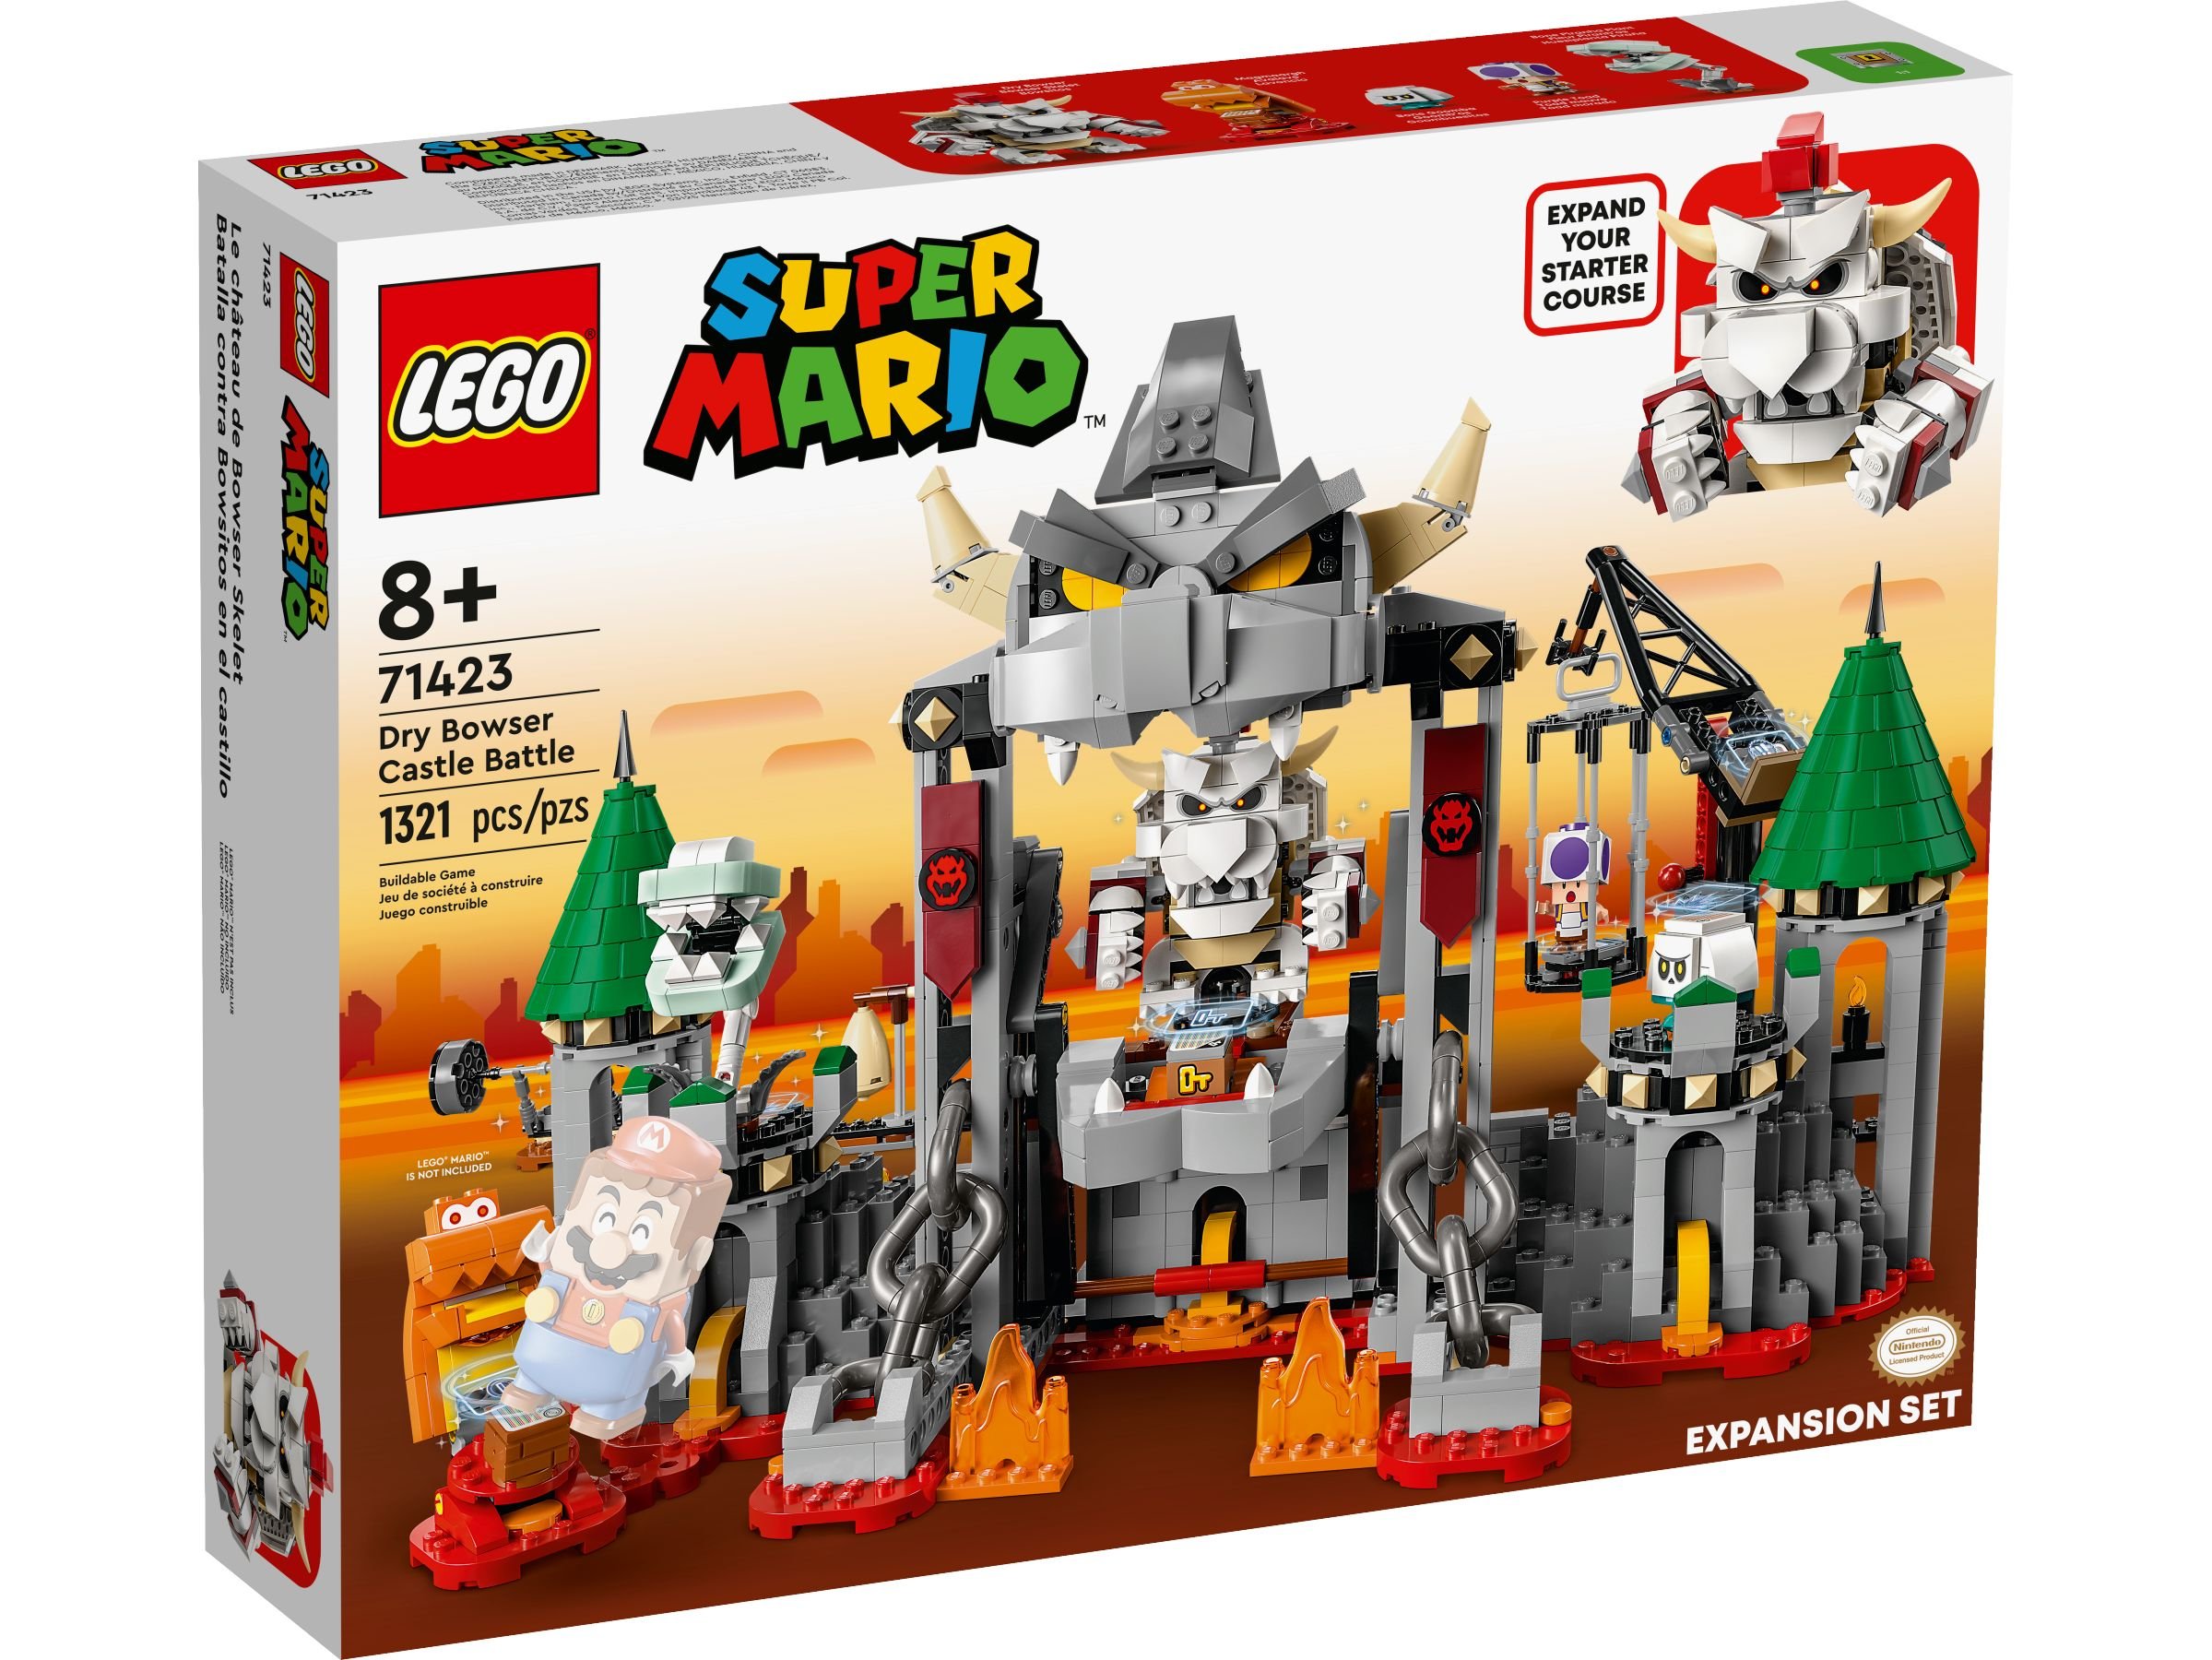 LEGO Super Mario 71423 Knochen-Bowsers Festungsschlacht – Erweiterungsset LEGO_71423_Box1_v39.jpg